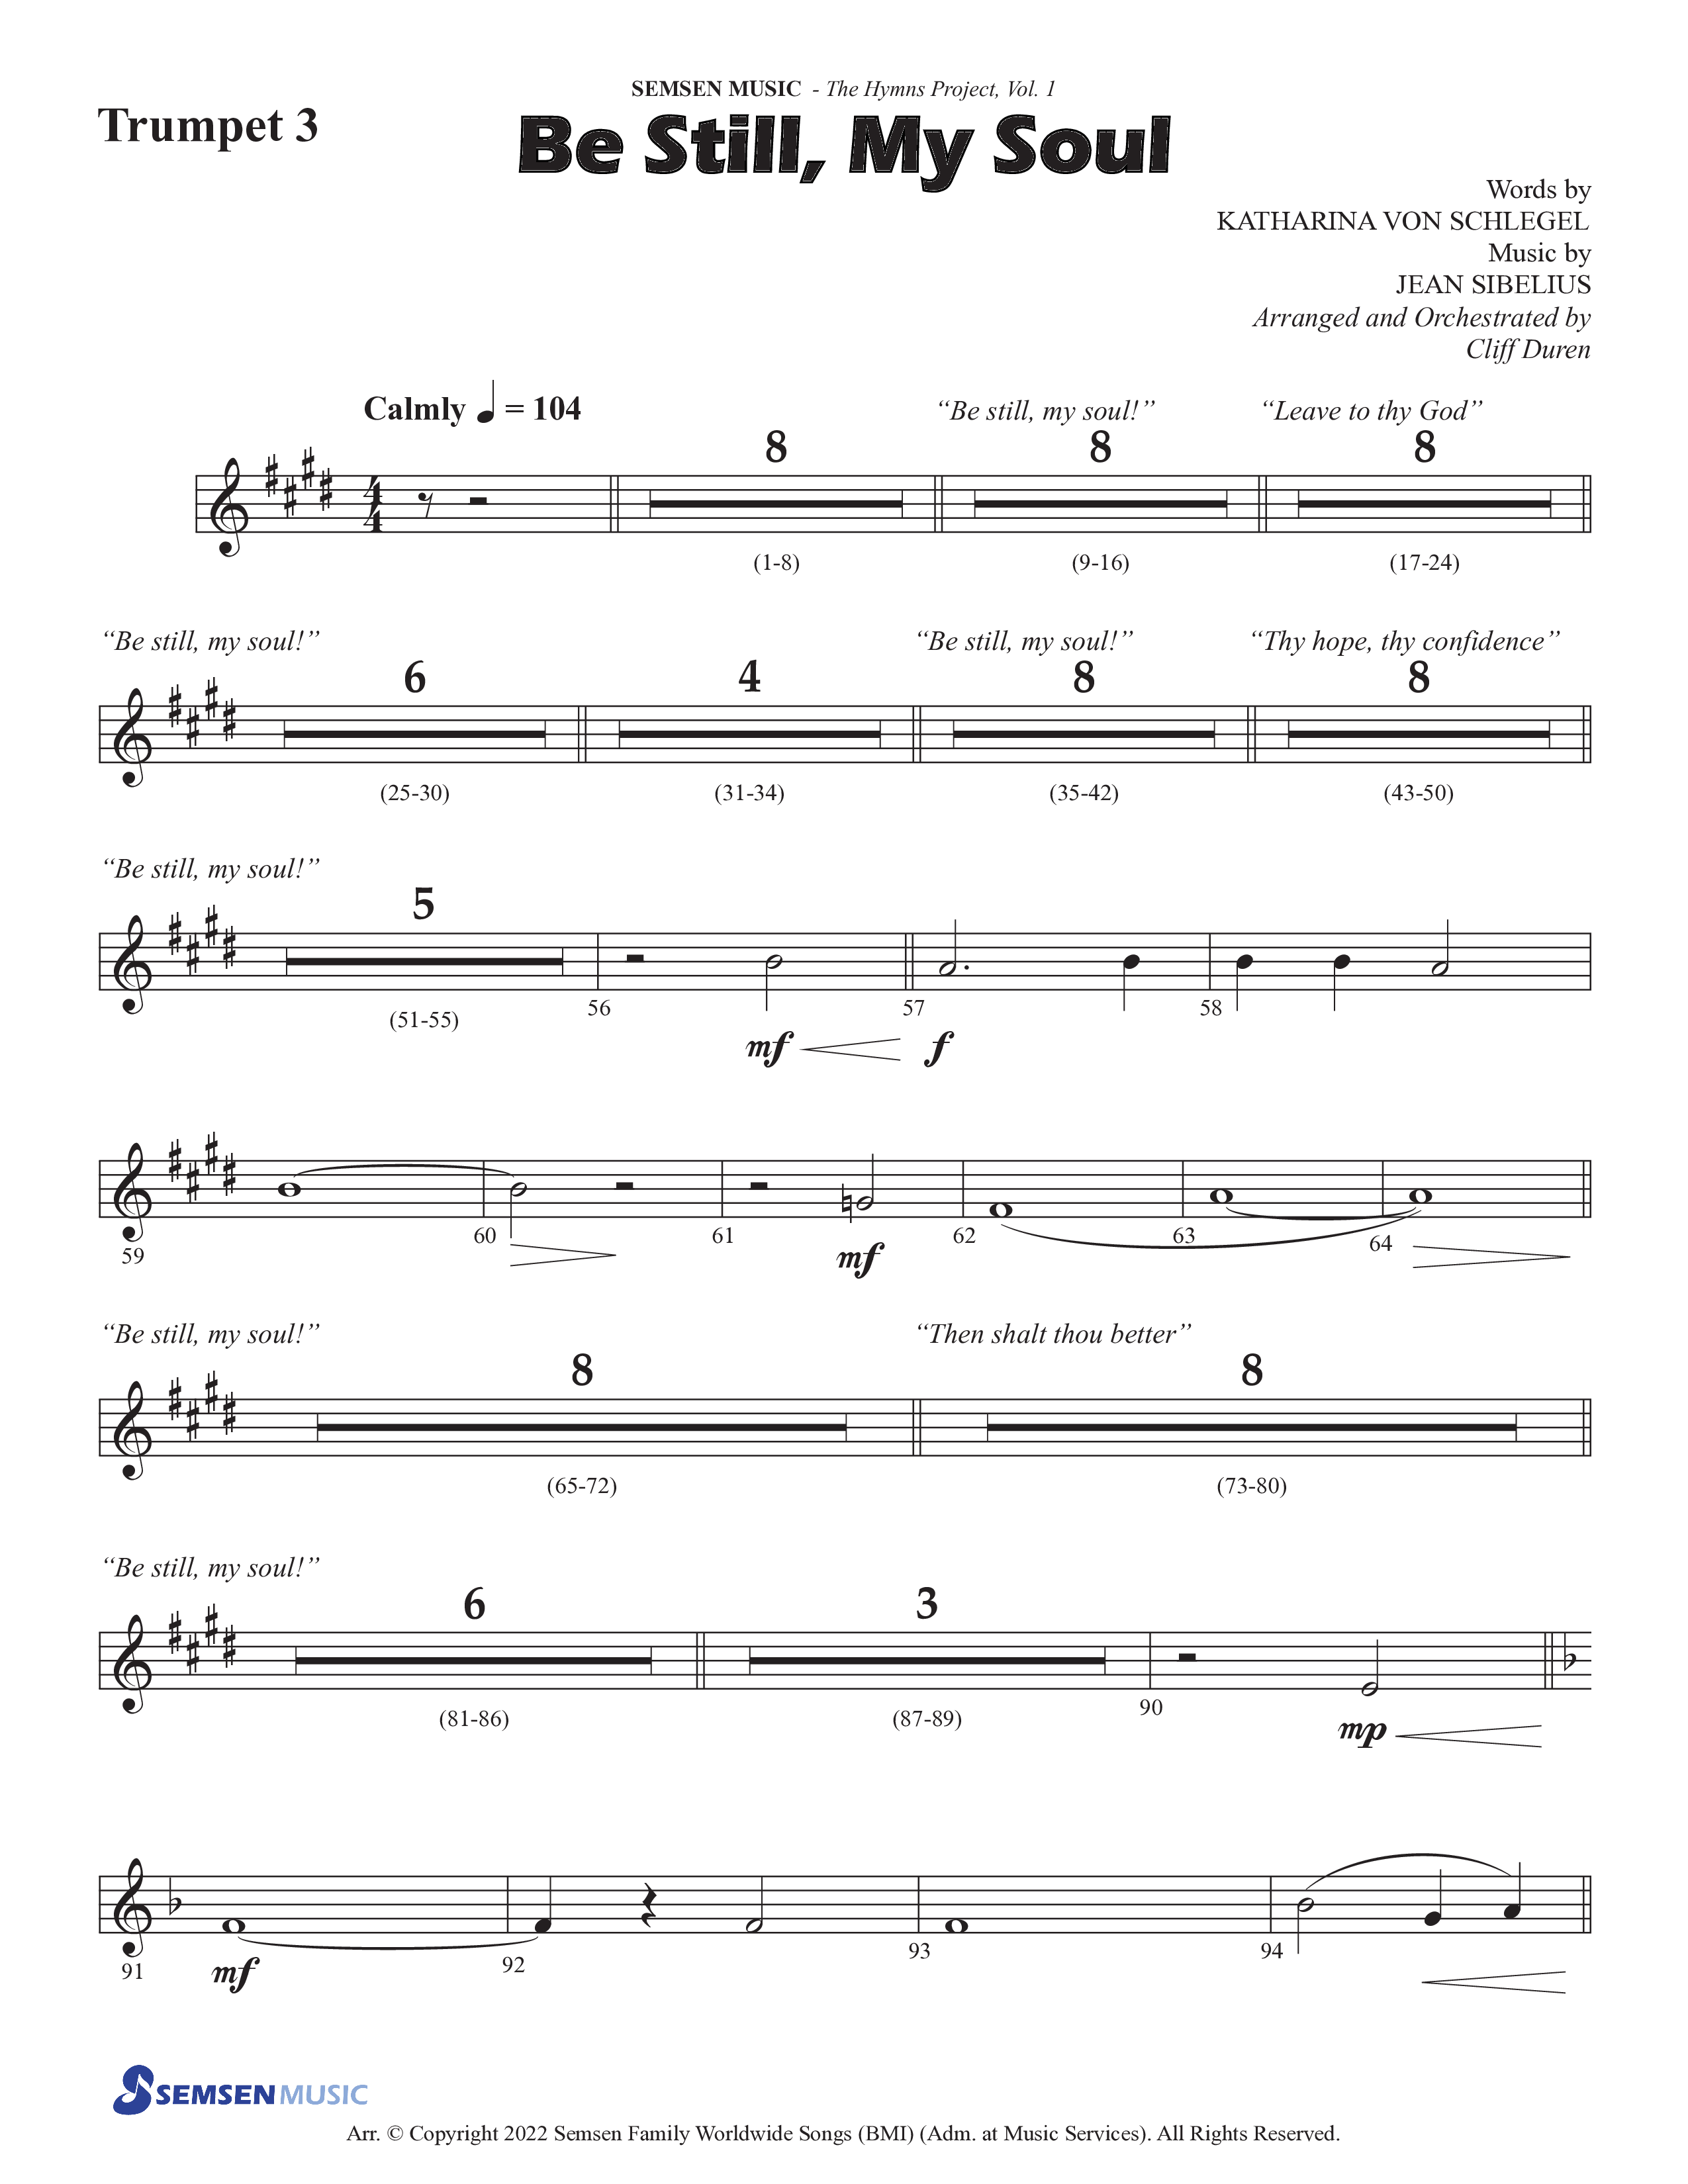 Be Still My Soul (Choral Anthem SATB) Trumpet 3 (Semsen Music / Arr. Cliff Duren)